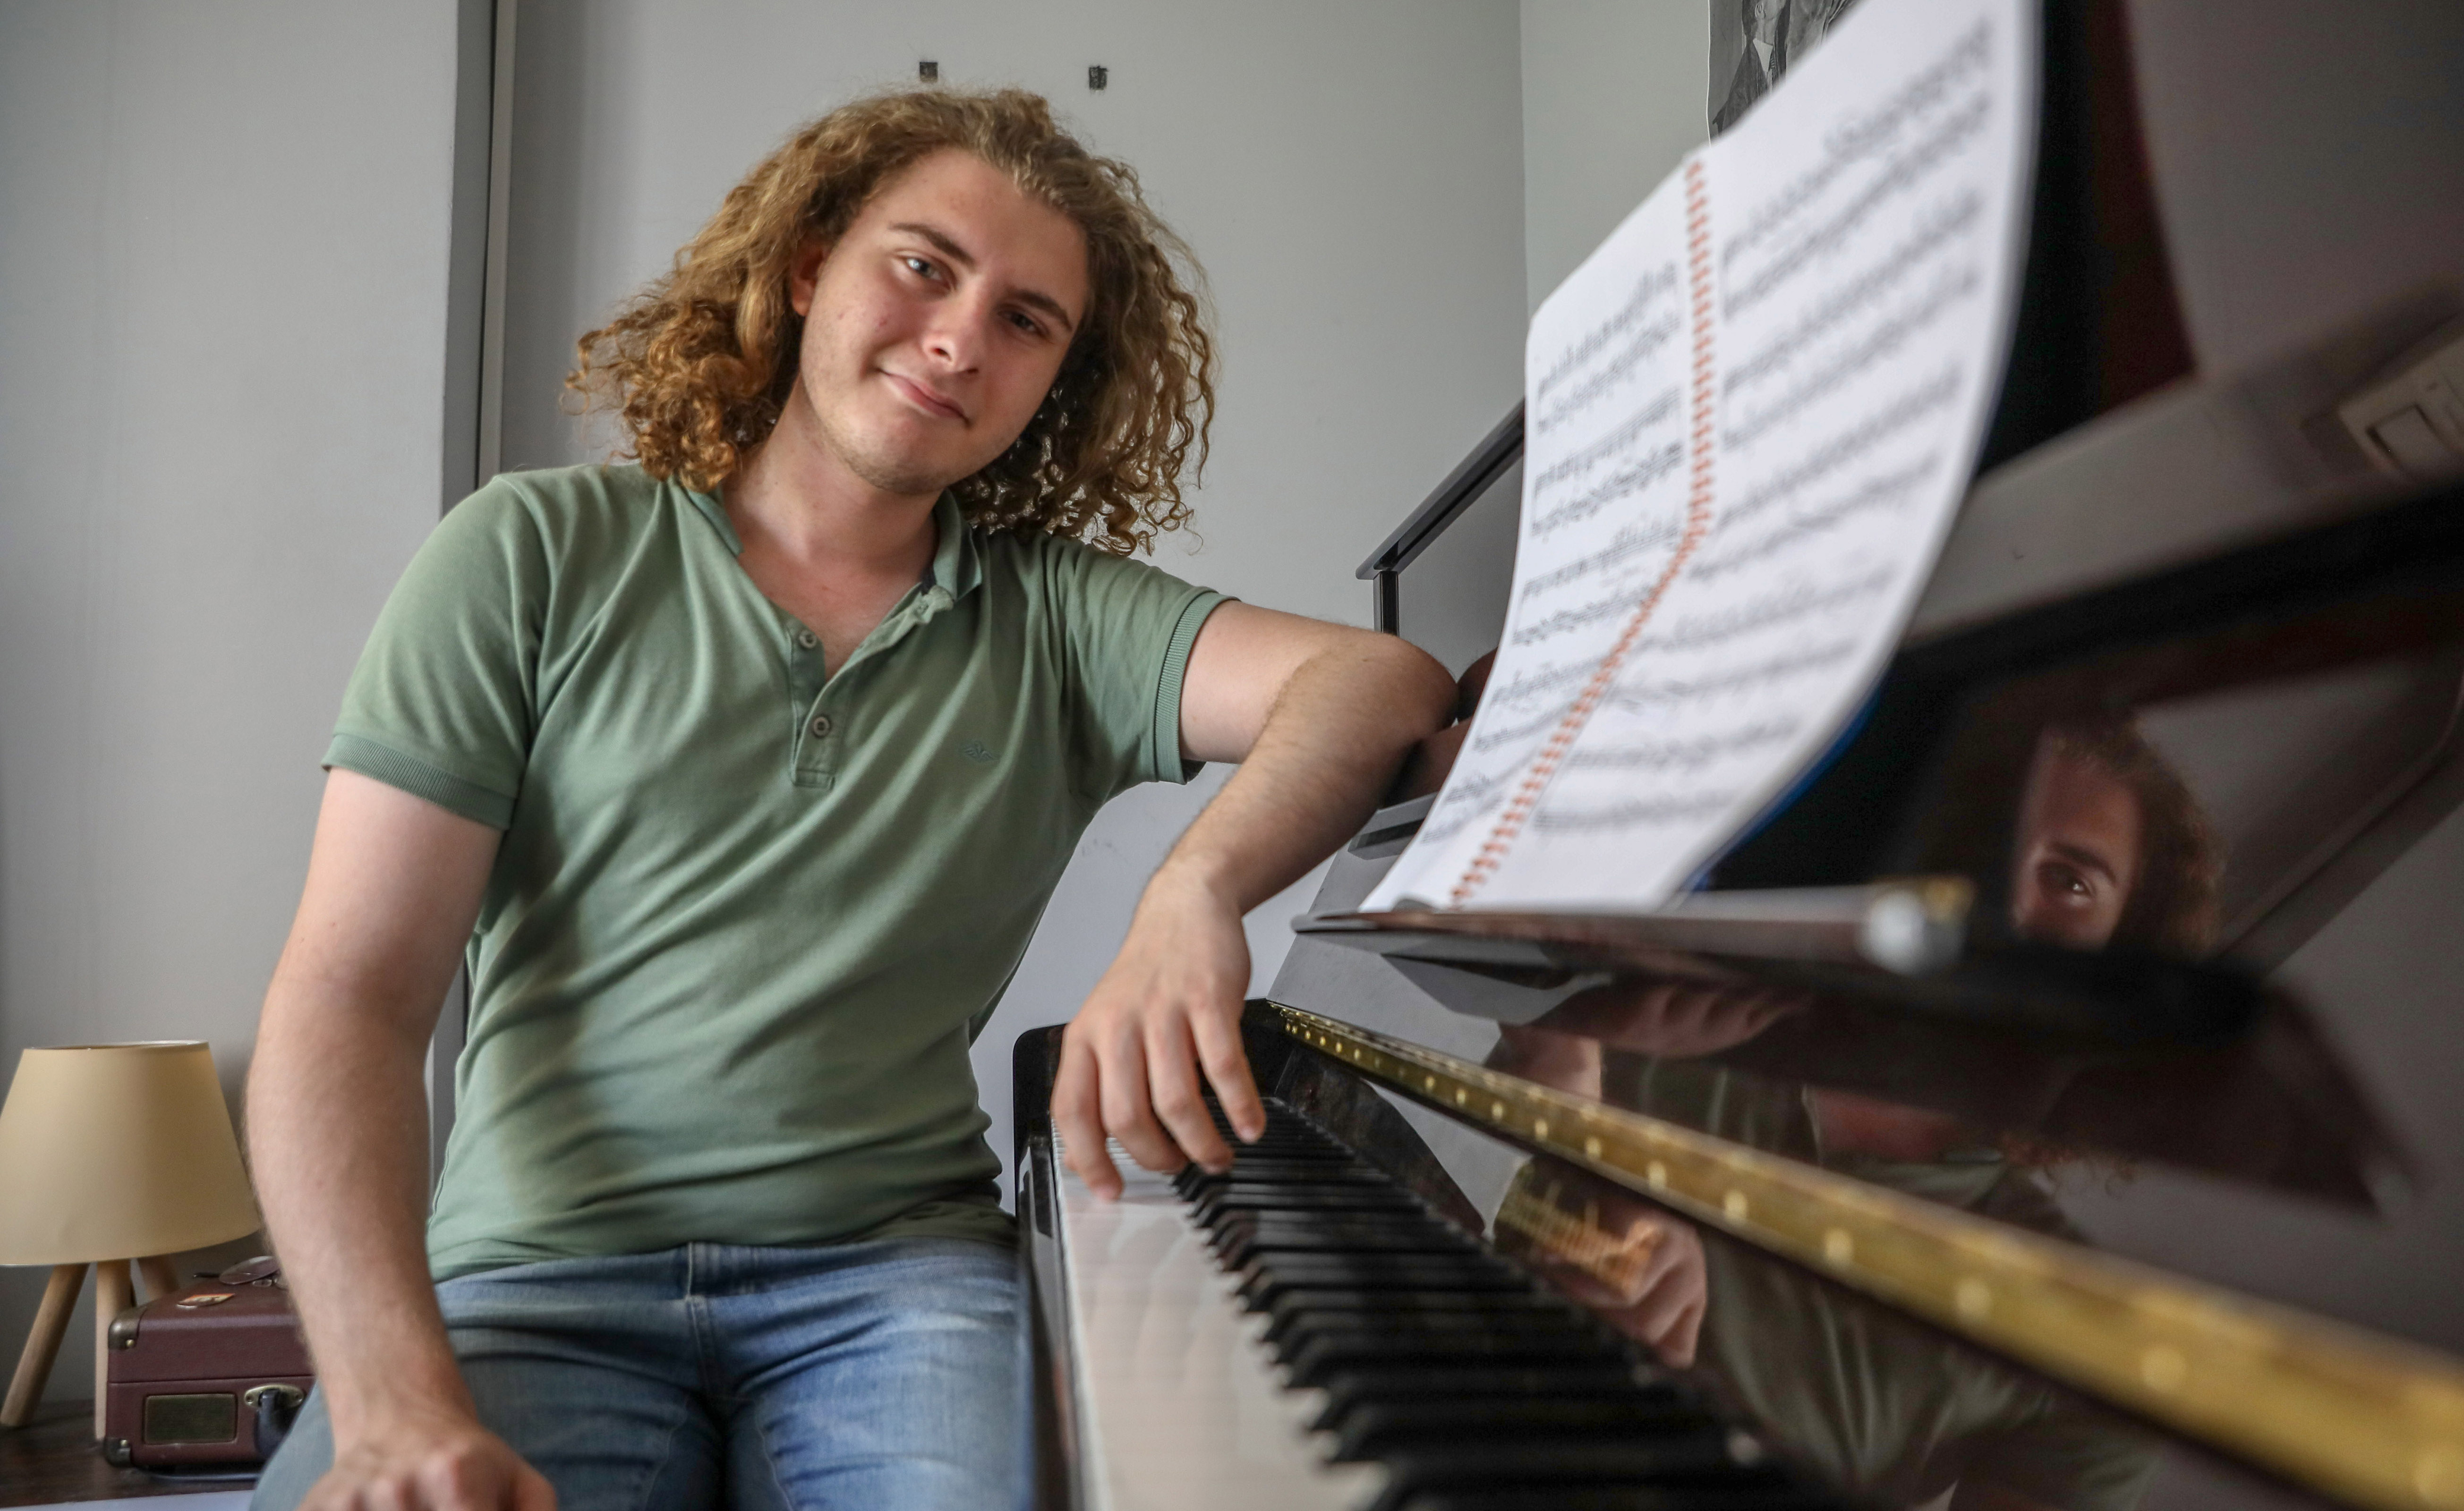 Almanya'daki müzik okulundan kabul alan 17 yaşındaki piyaniste Türkiye'de vize randevusu verilmiyor